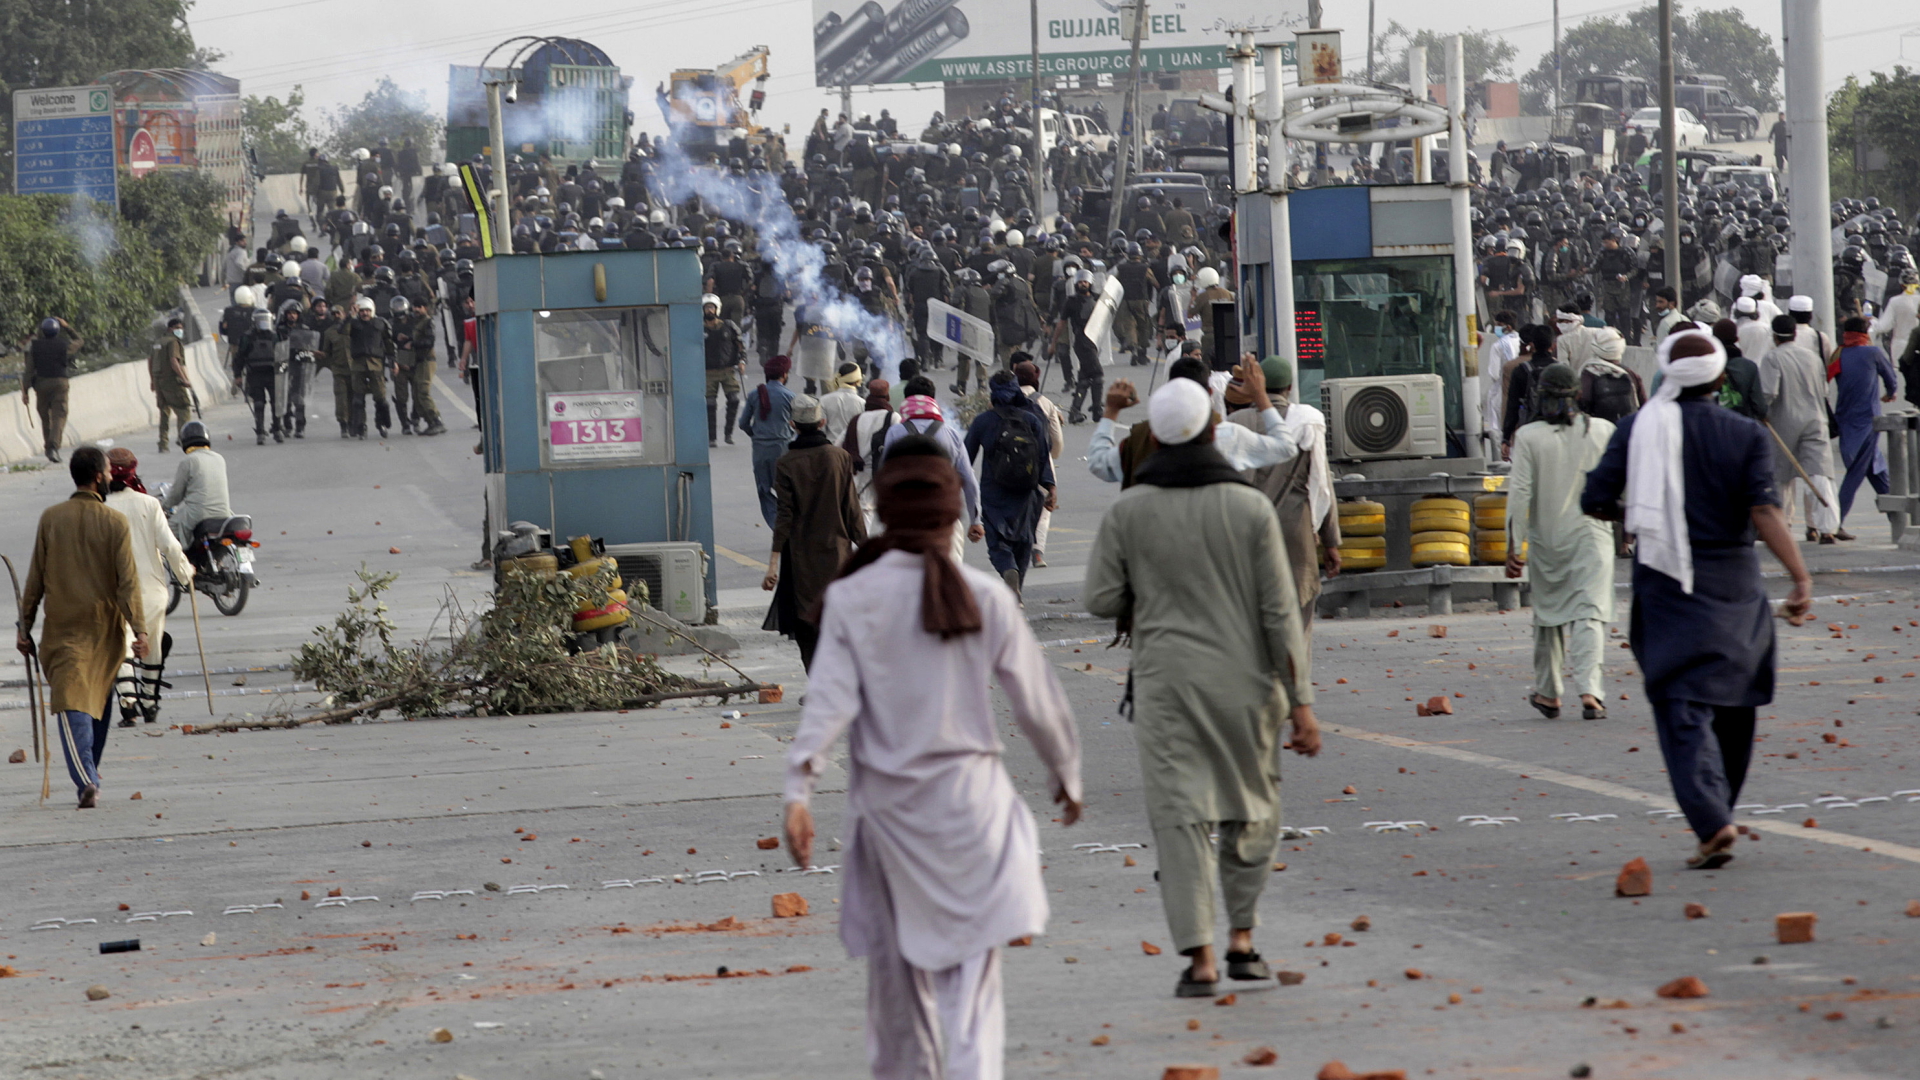 Anhänger der islamistischen Partei Tehreek-e-Labbaik Pakistan werfen Steine auf Polizisten | AP